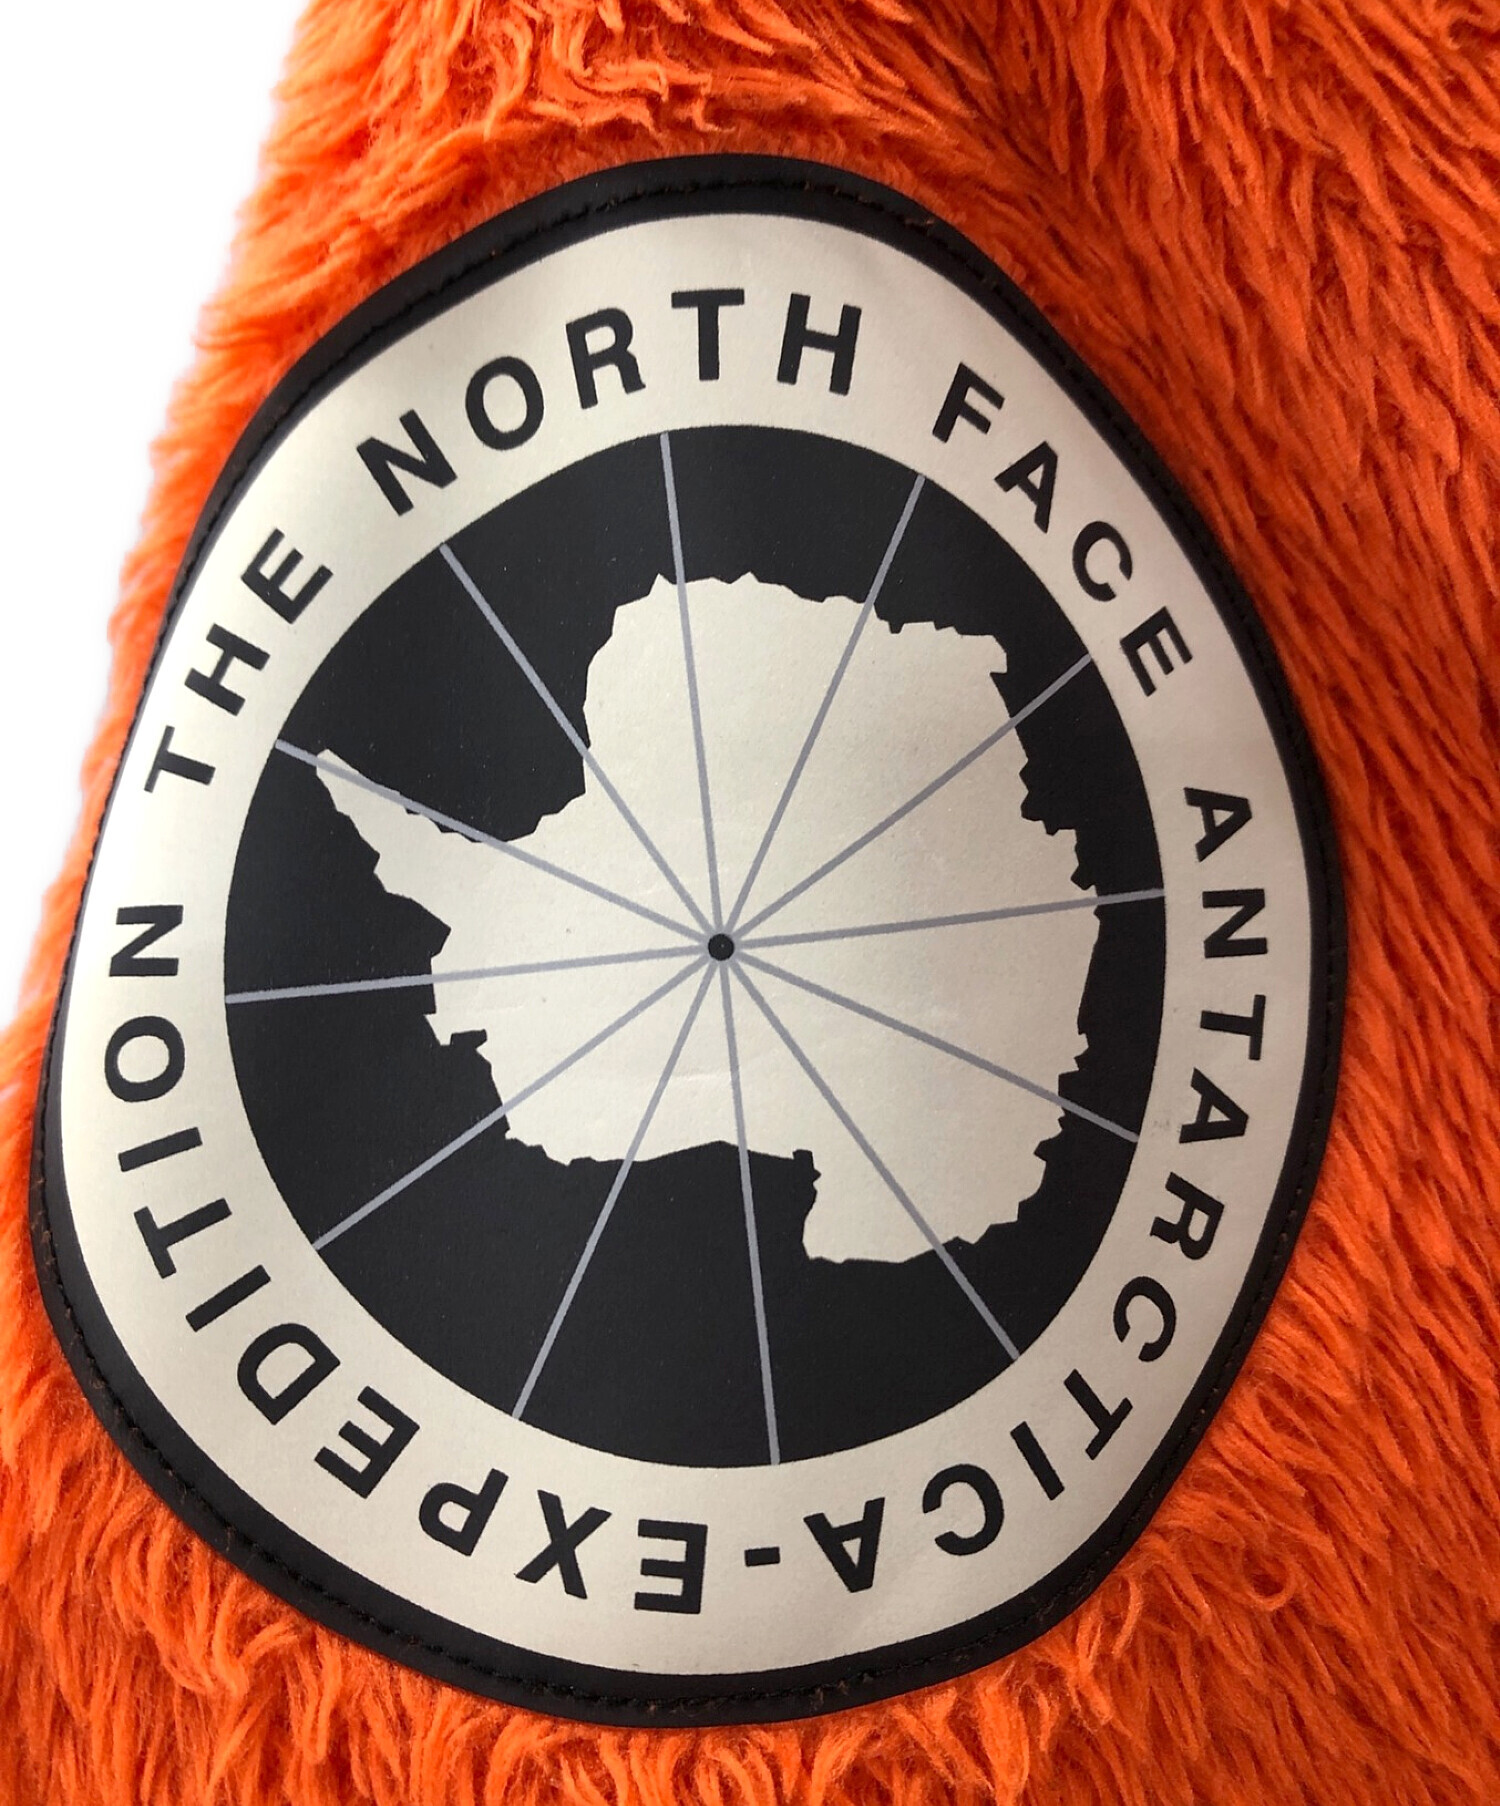 THE NORTH FACE (ザ ノース フェイス) アンタークティカ バーサロフトジャケット オレンジ サイズ:XL